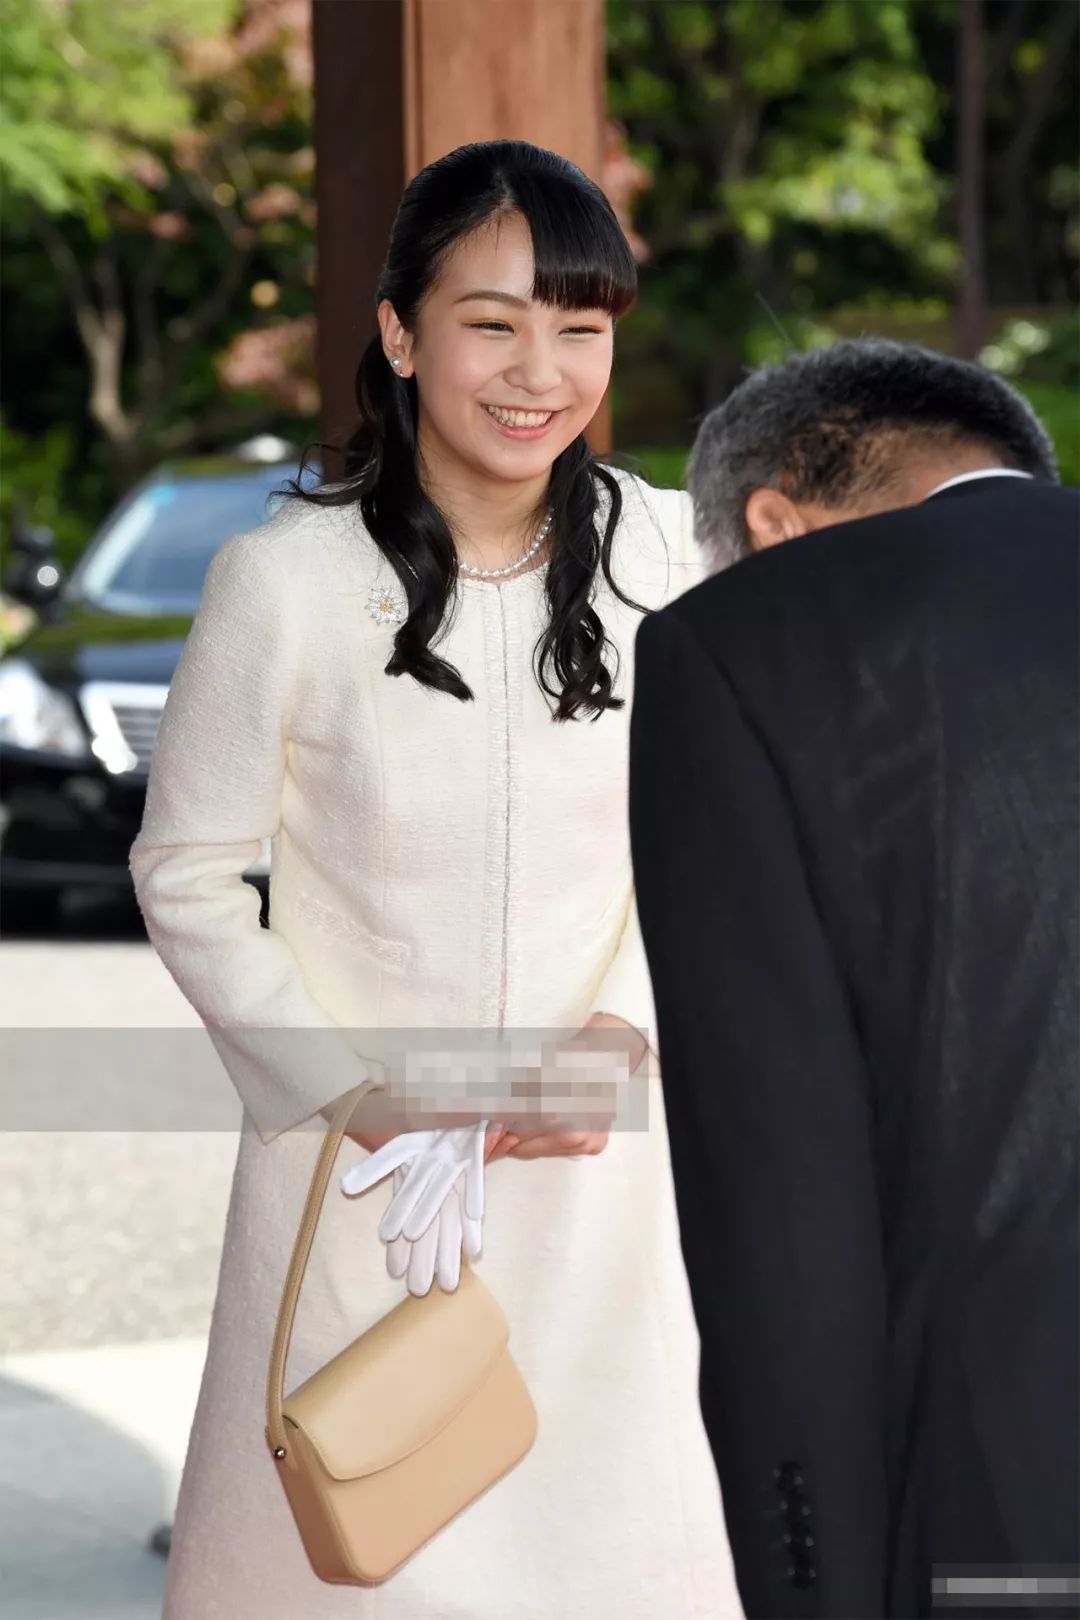 称号是"秋筱宫佳子内亲王,享有"殿下"的称号,她的皇家徽印是大黄槿